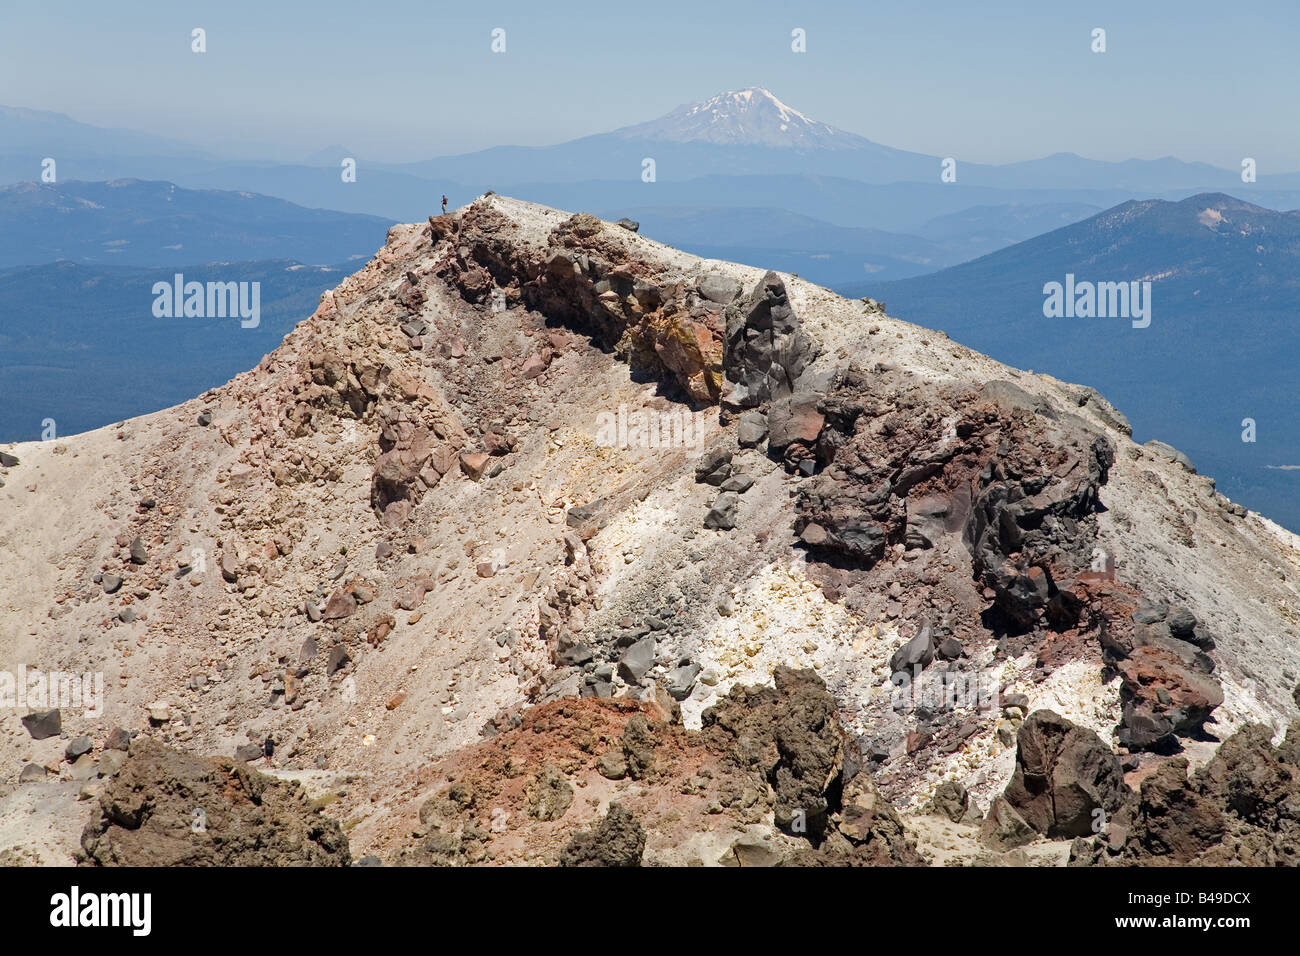 Il bordo del cratere di Lassen Peak vulcano, con Mt. Shasta in background Foto Stock